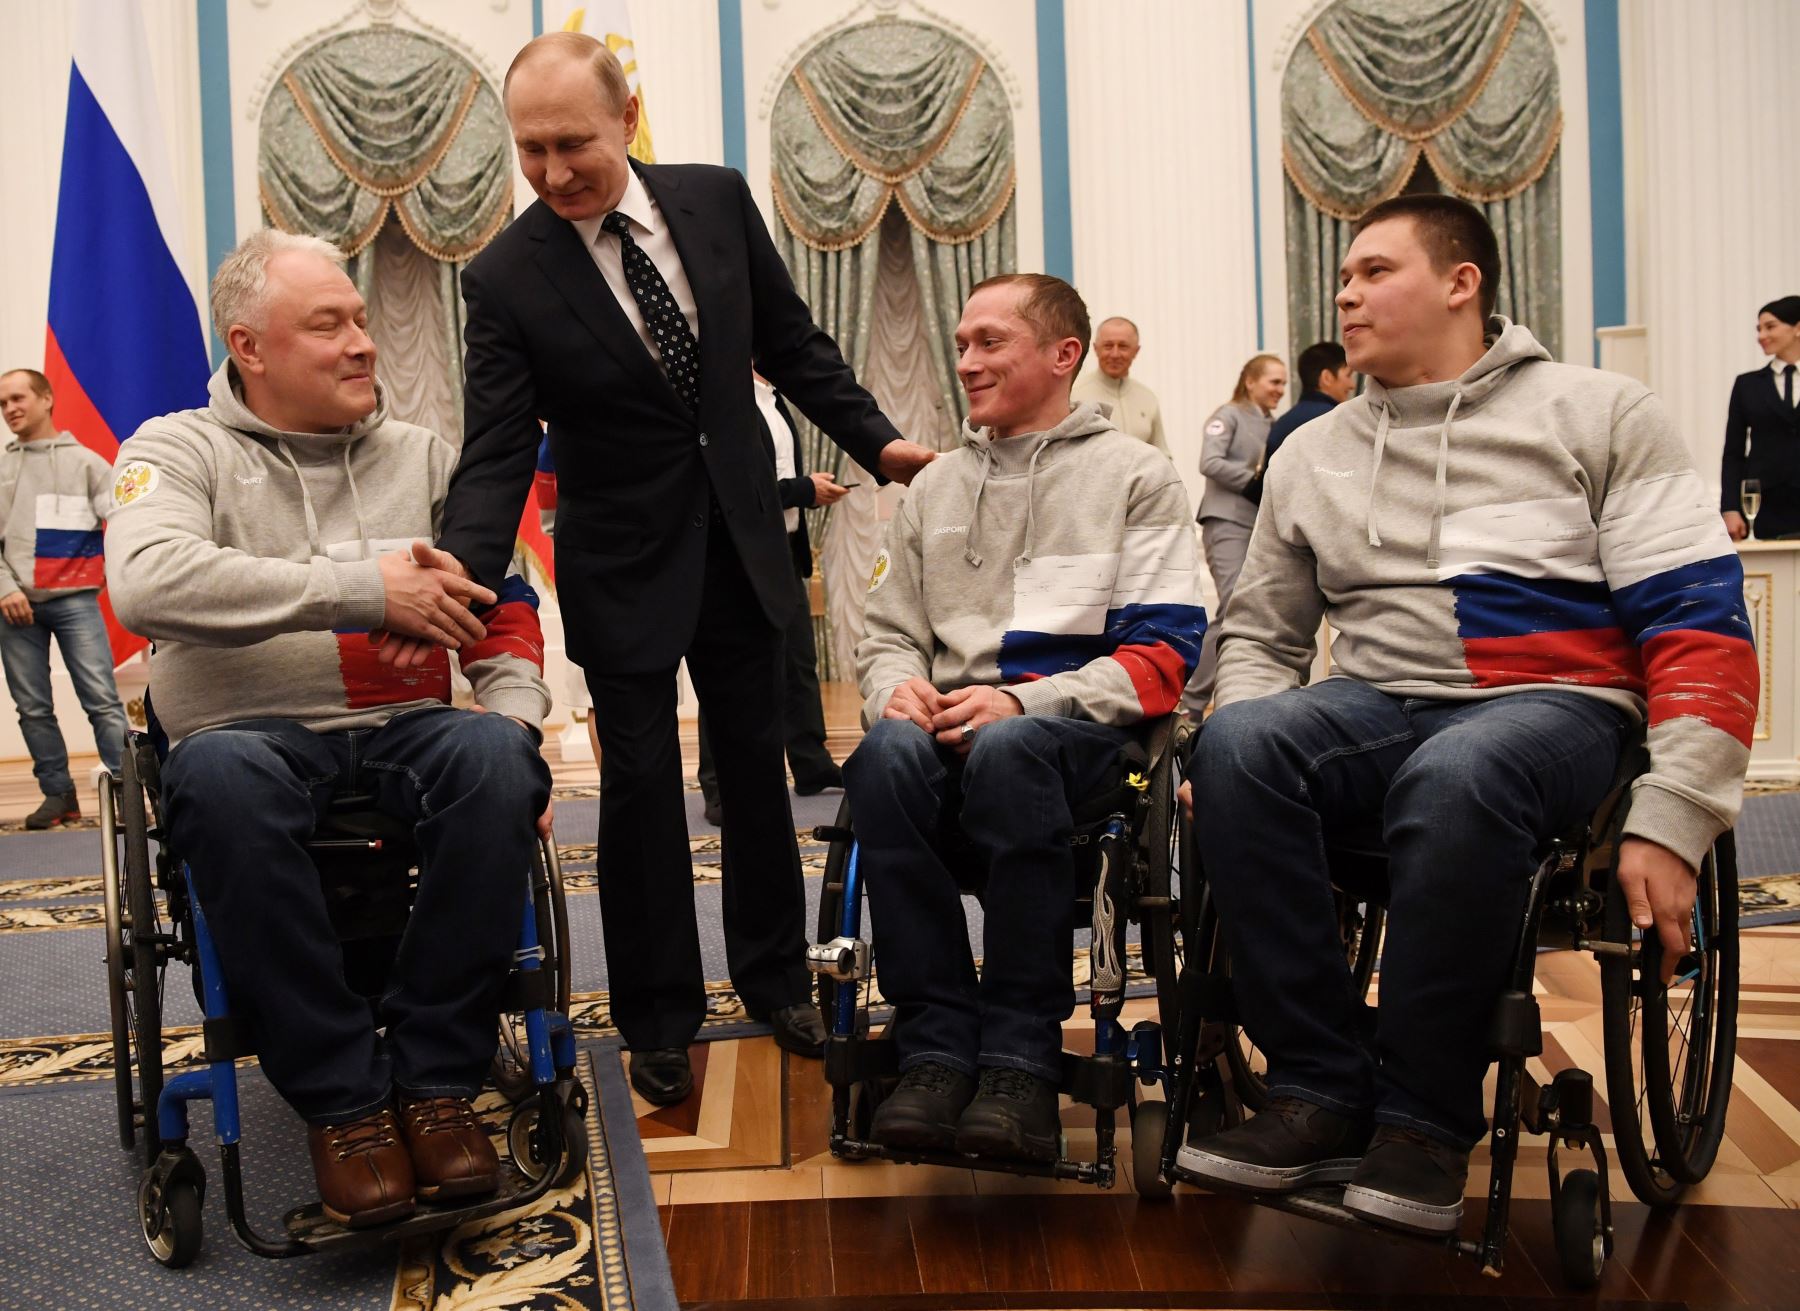 Presidente Vladimir Putin, felicita a los medallistas de los Juegos Paralímpicos de Invierno Pyeongchang 2018 después de una ceremonia de premiación en el Kremlin en Moscú.Foto:AFP